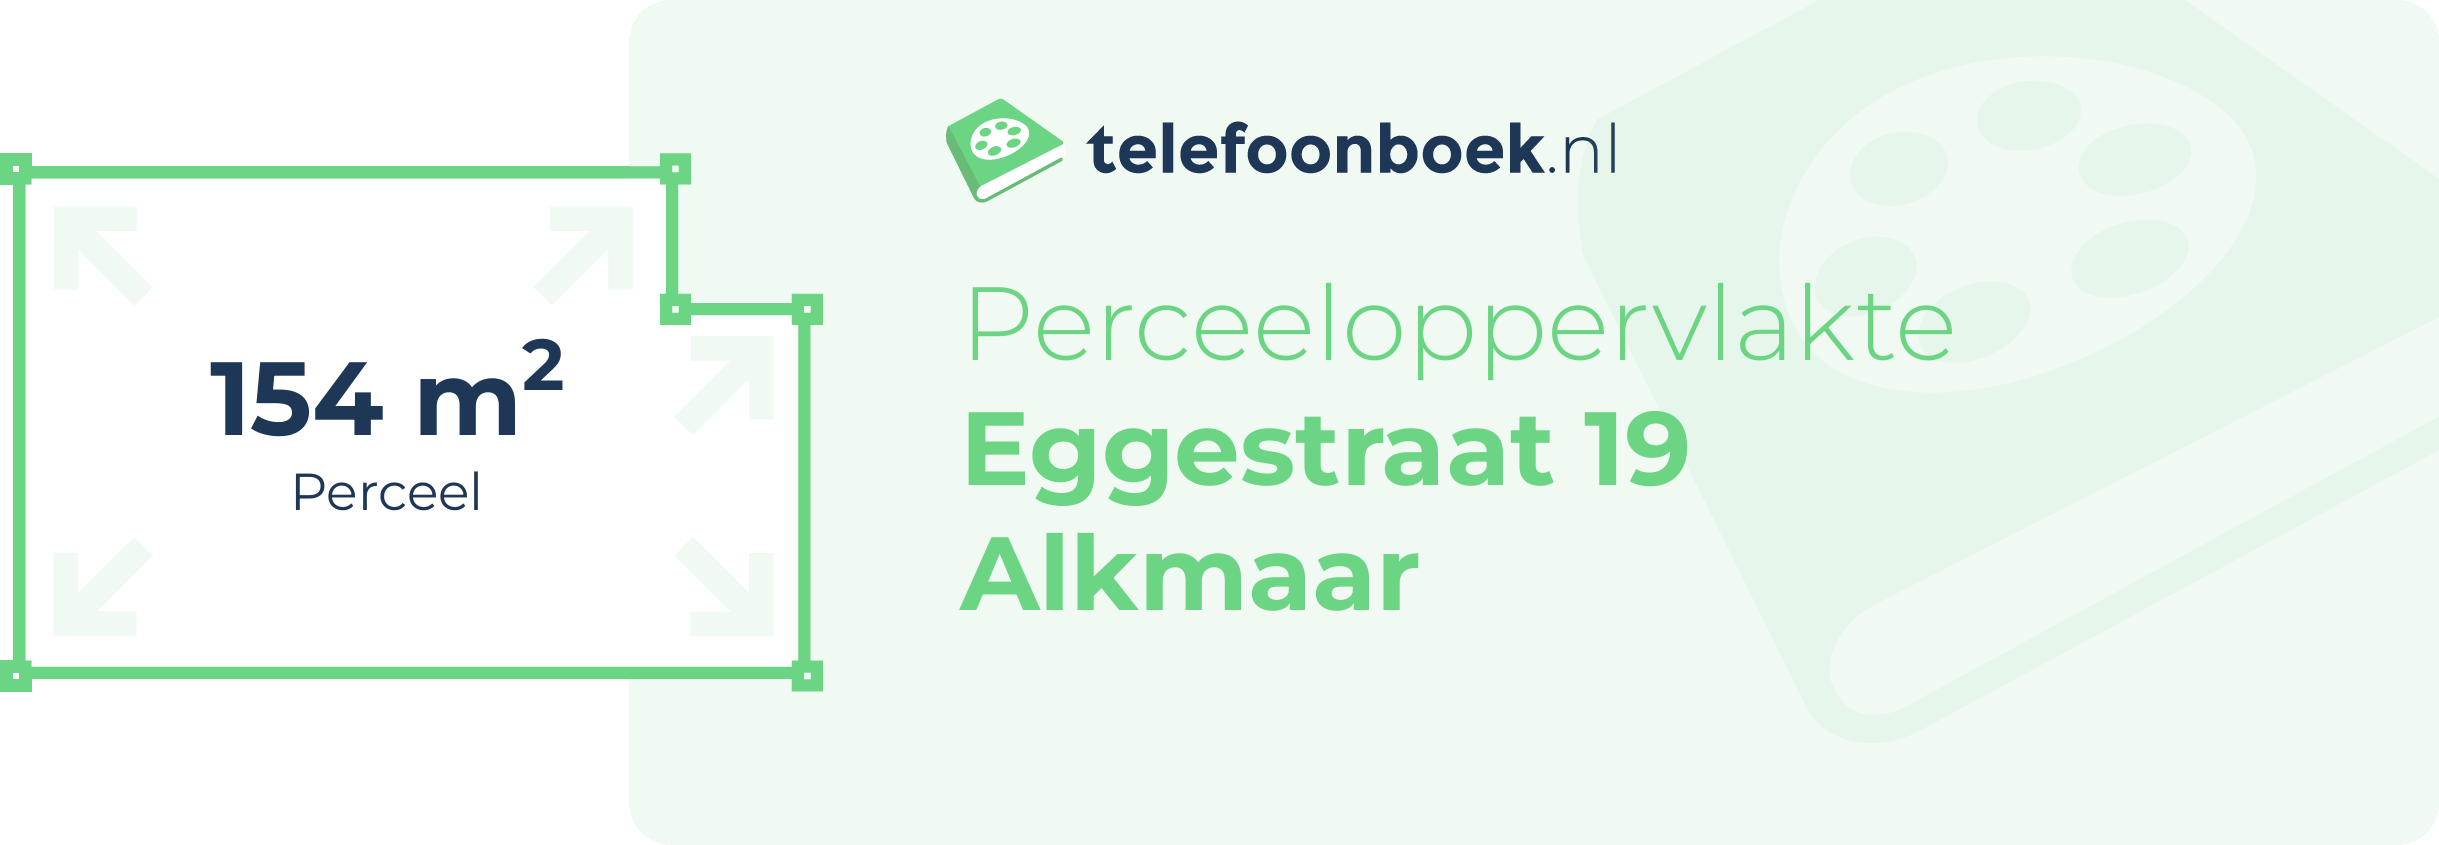 Perceeloppervlakte Eggestraat 19 Alkmaar